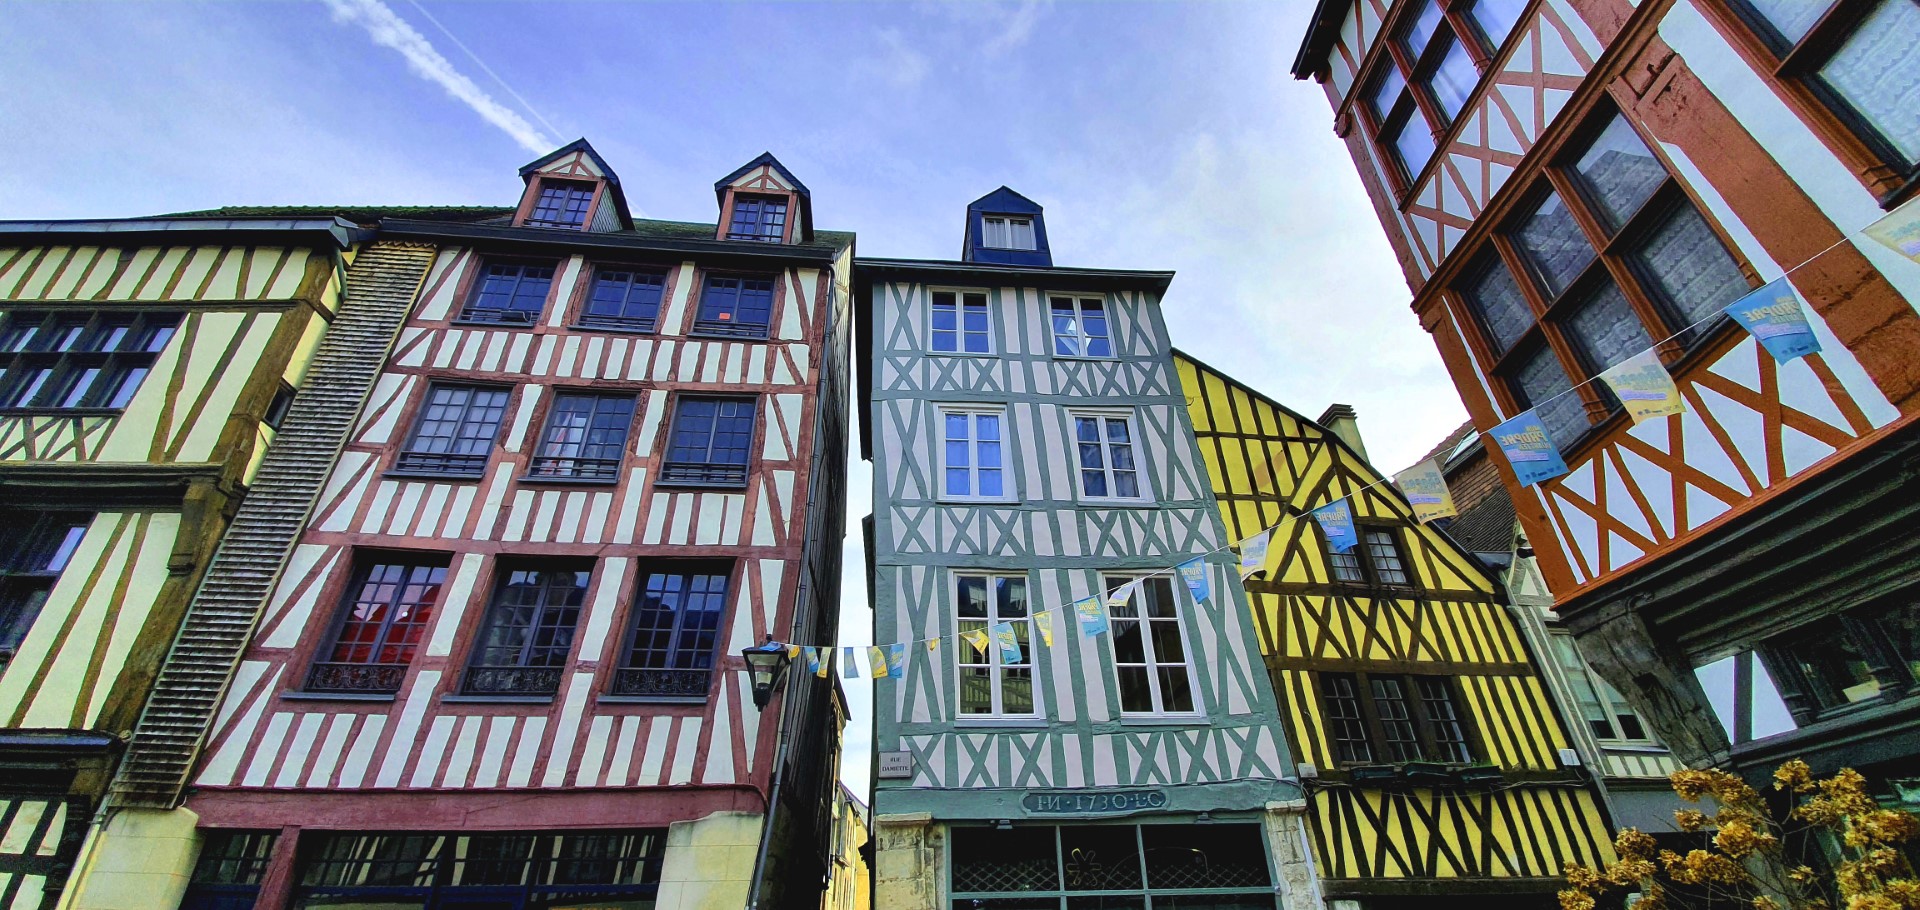 Rouen, première ville à colombages de France ©RNI